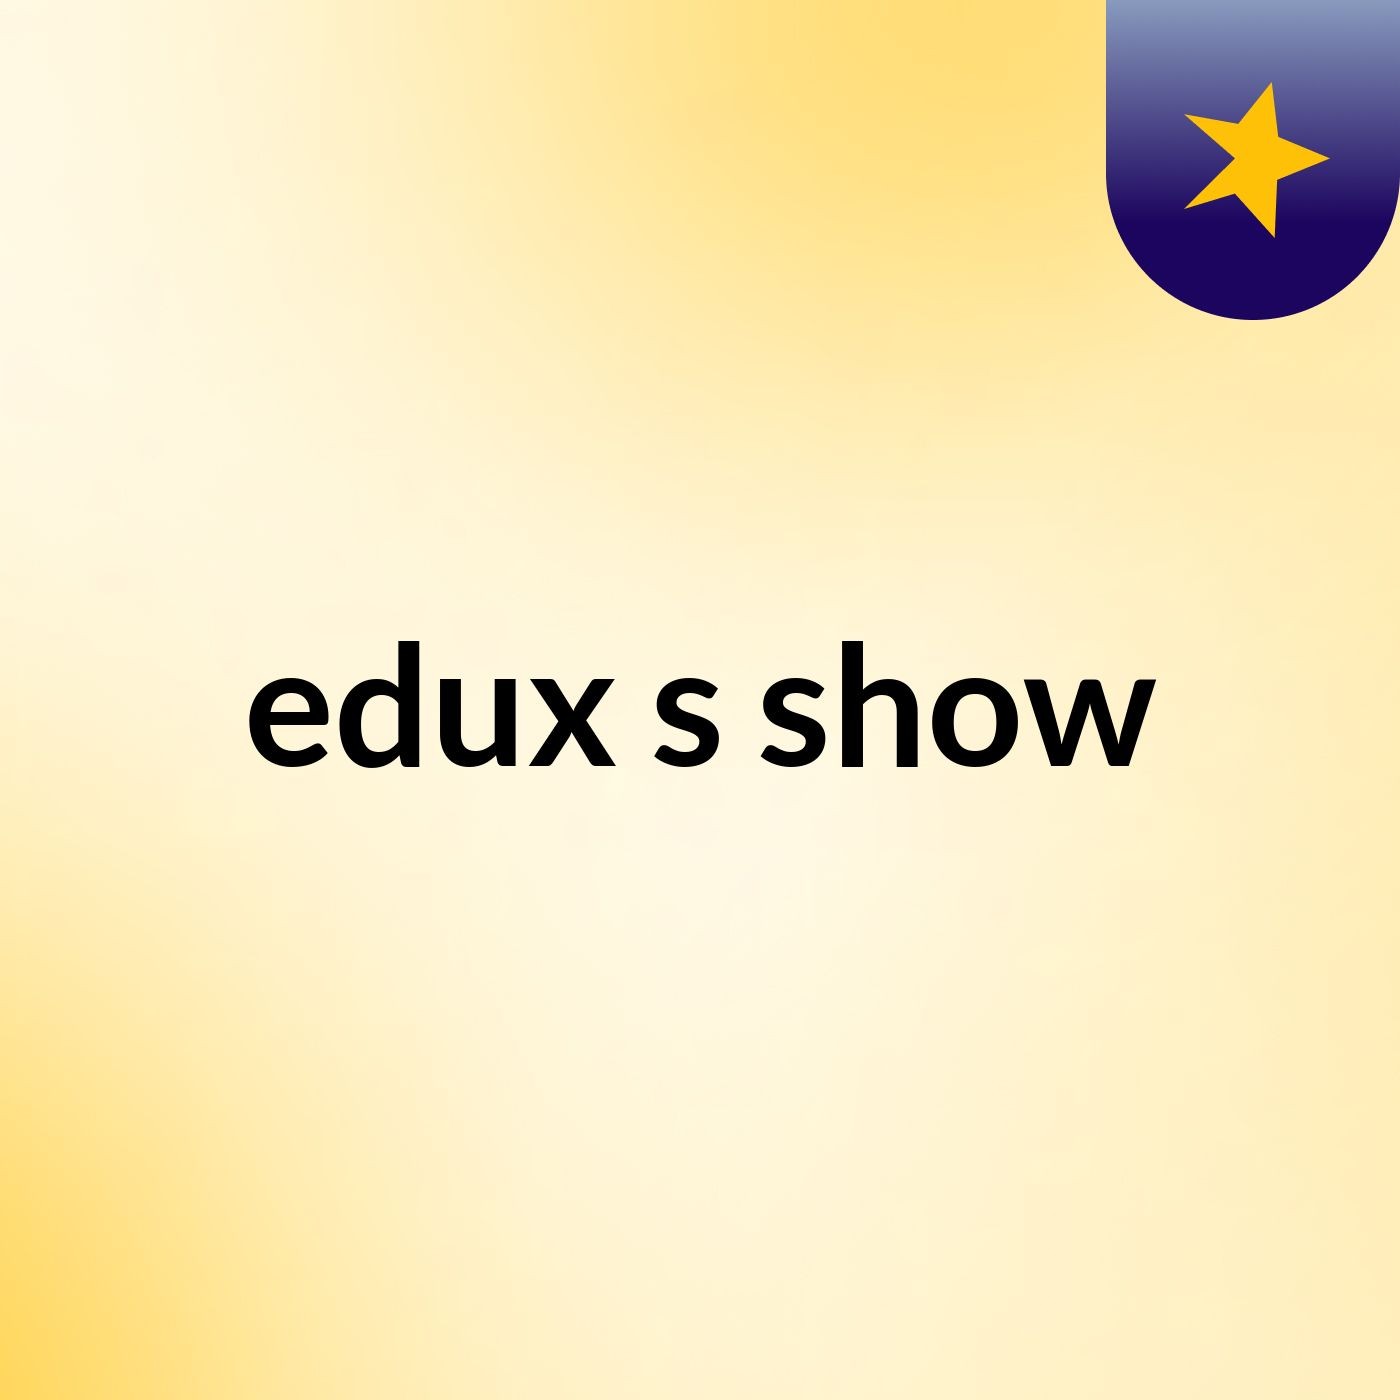 edux's show